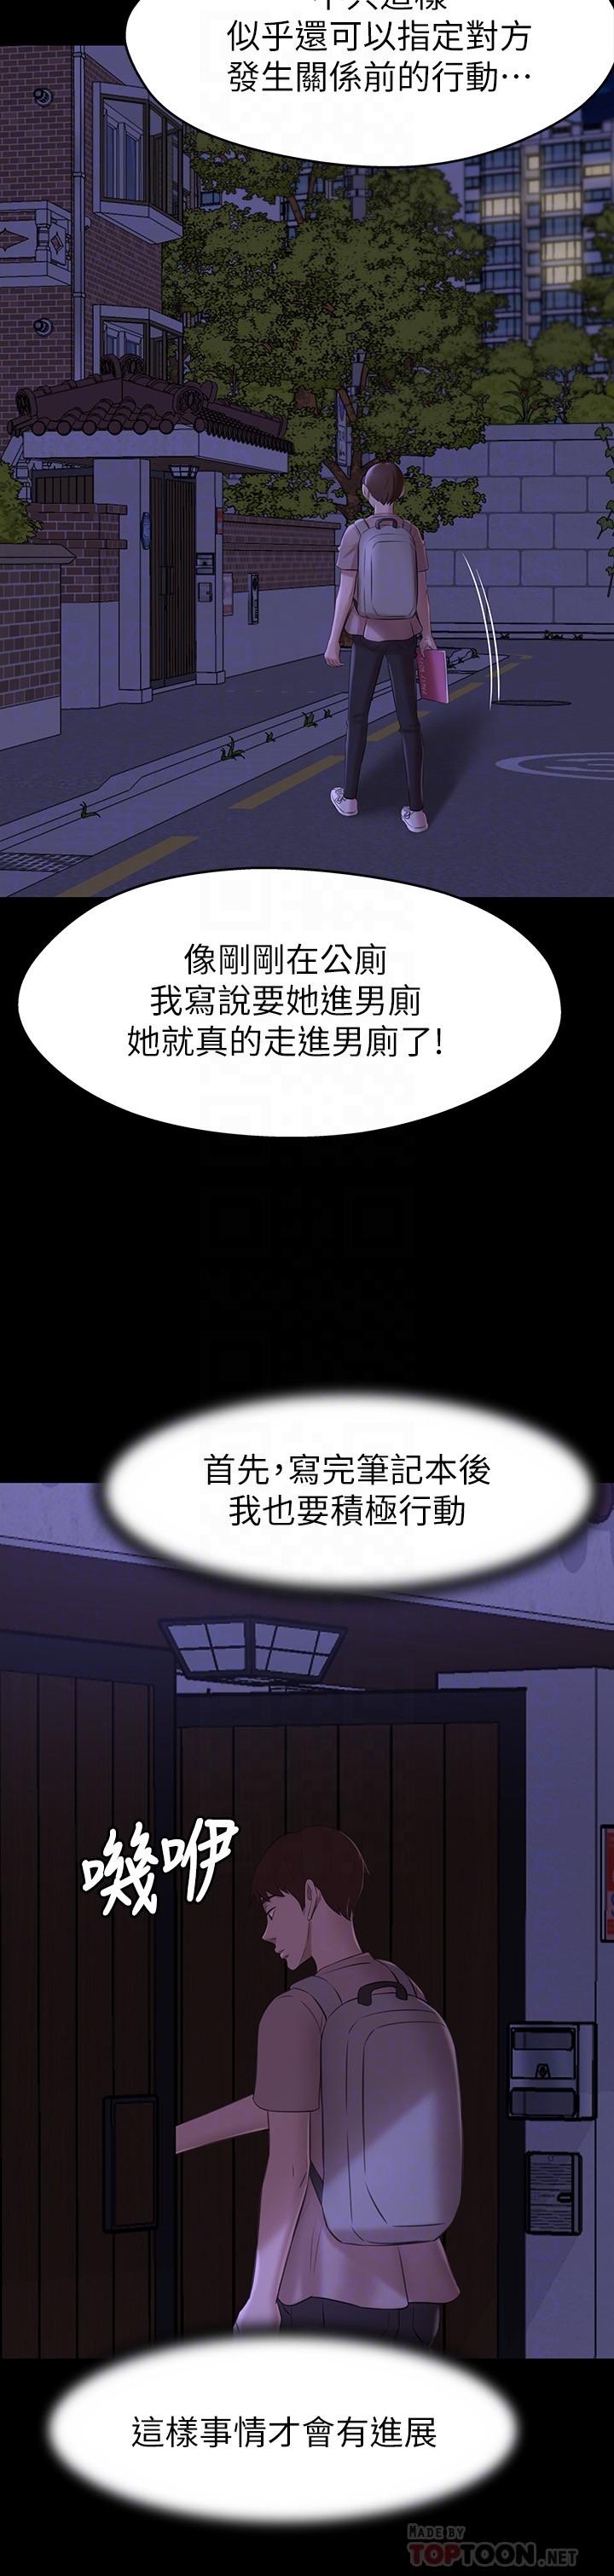 《小裤裤笔记》漫画 第16话 - 傲慢的国小同学张穗桦